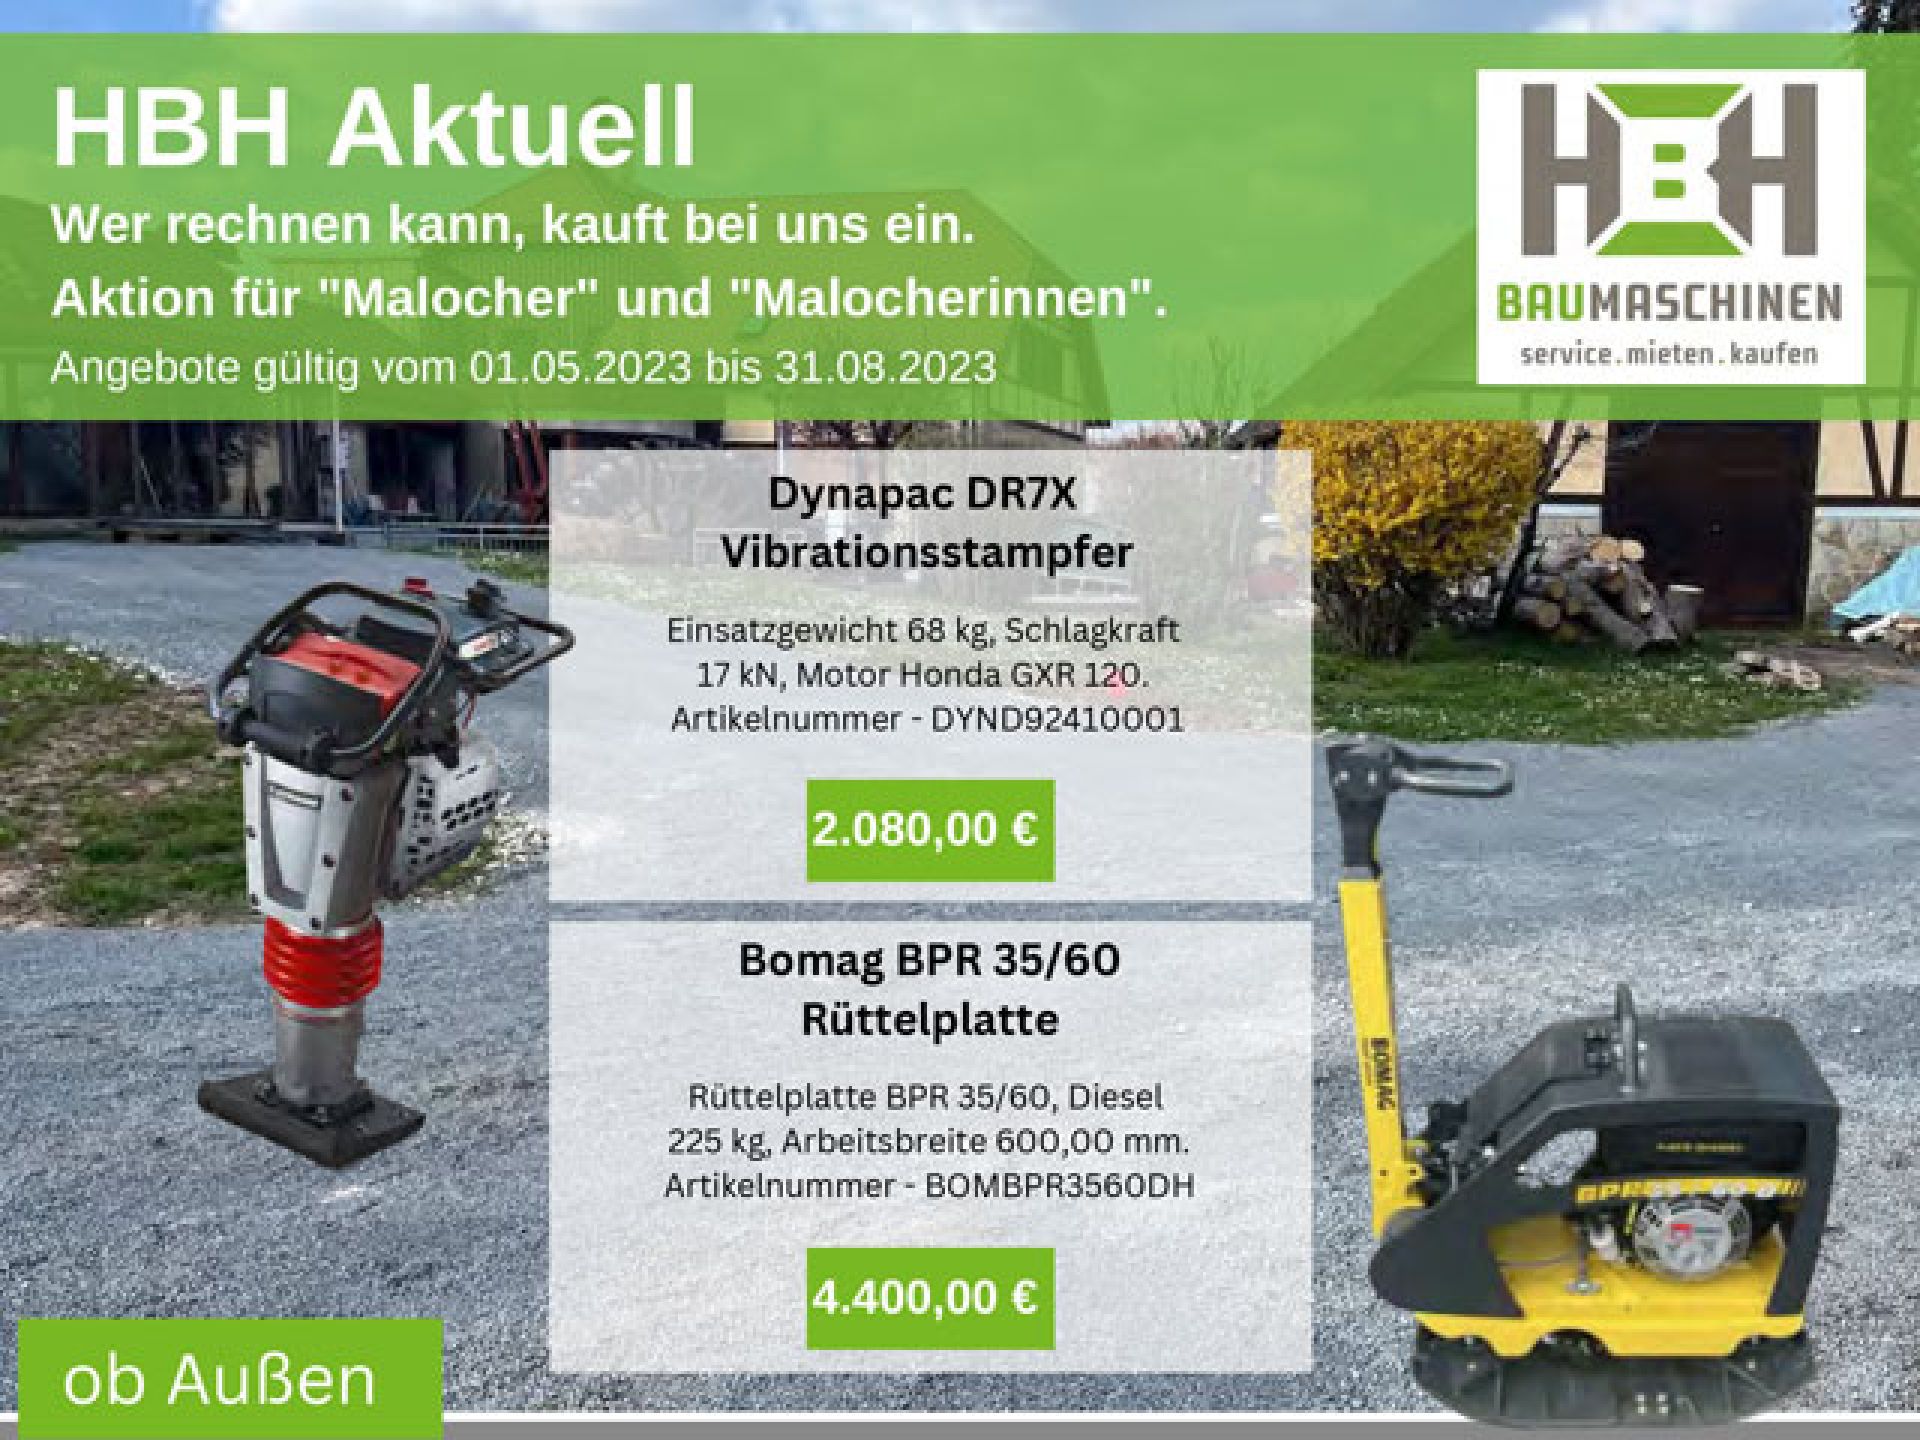 HBH-Baumaschinen-Fachmarkt-Angebote-bis-2023_08-1-ee5ab36f HBH Baumaschinen - Aktionen / Angebote